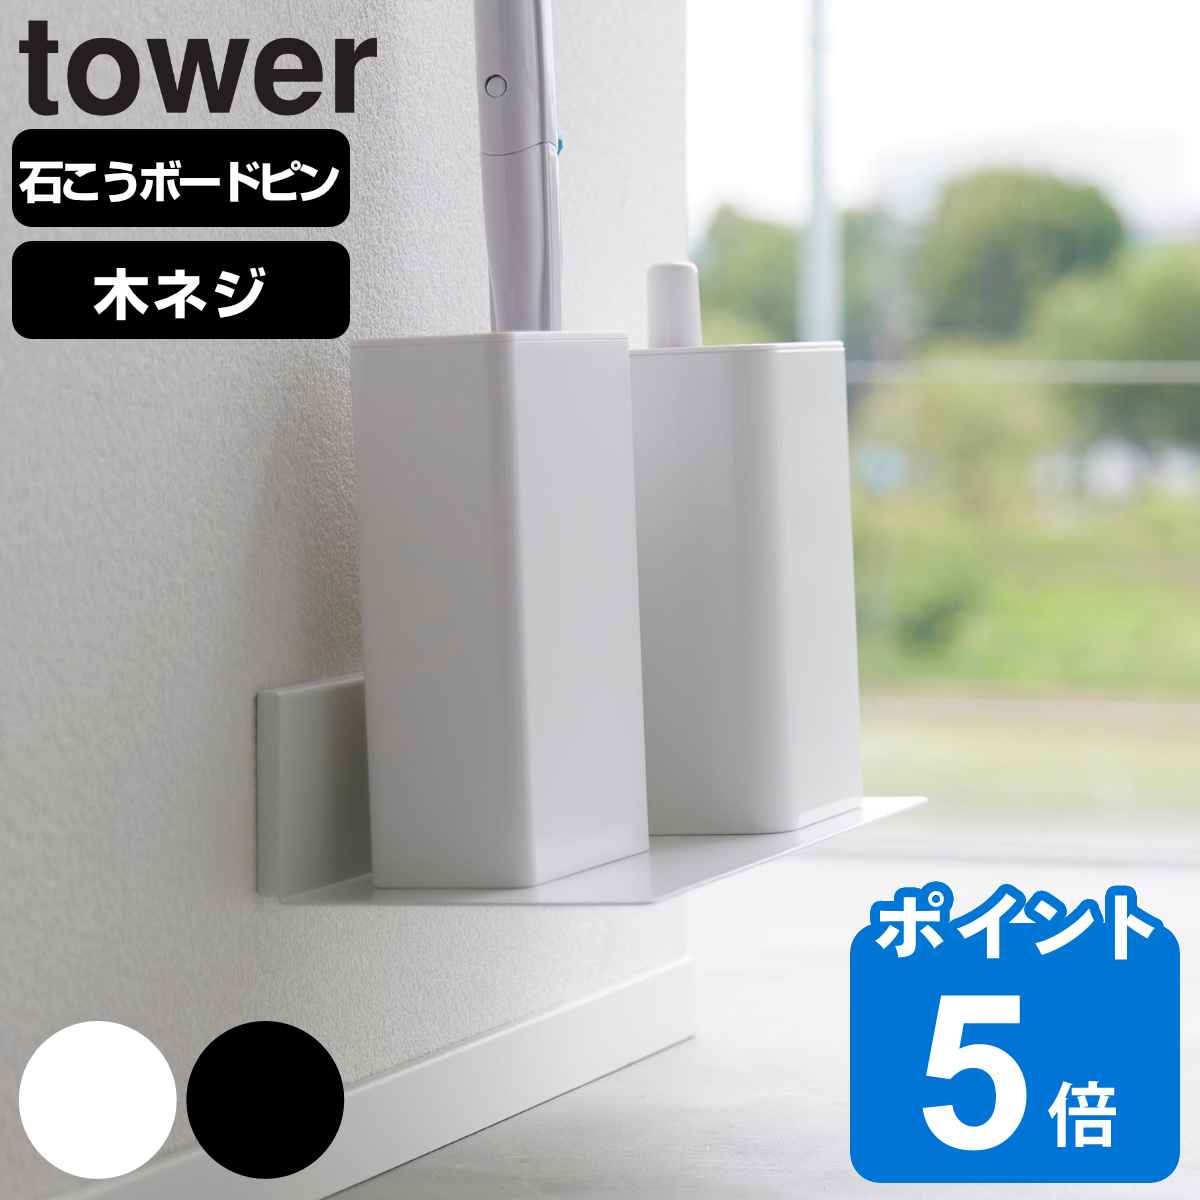 山崎実業 tower 石こうボード壁対応浮かせるトイレ棚 タワー